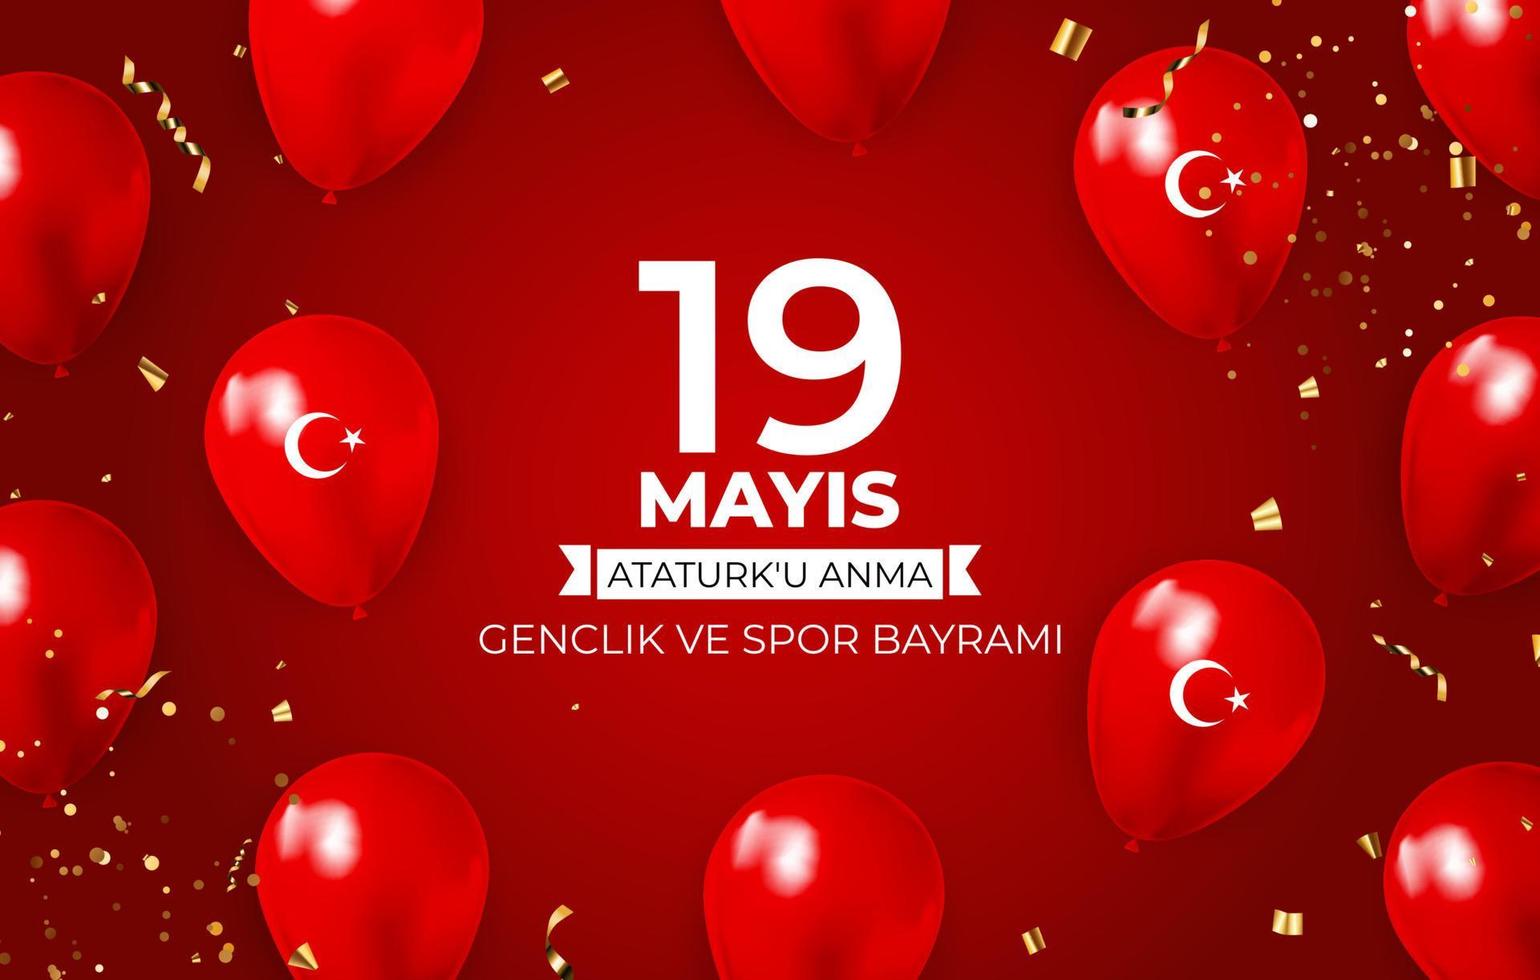 19 mai commémoration de la journée atatürk, de la jeunesse et des sports vecteur